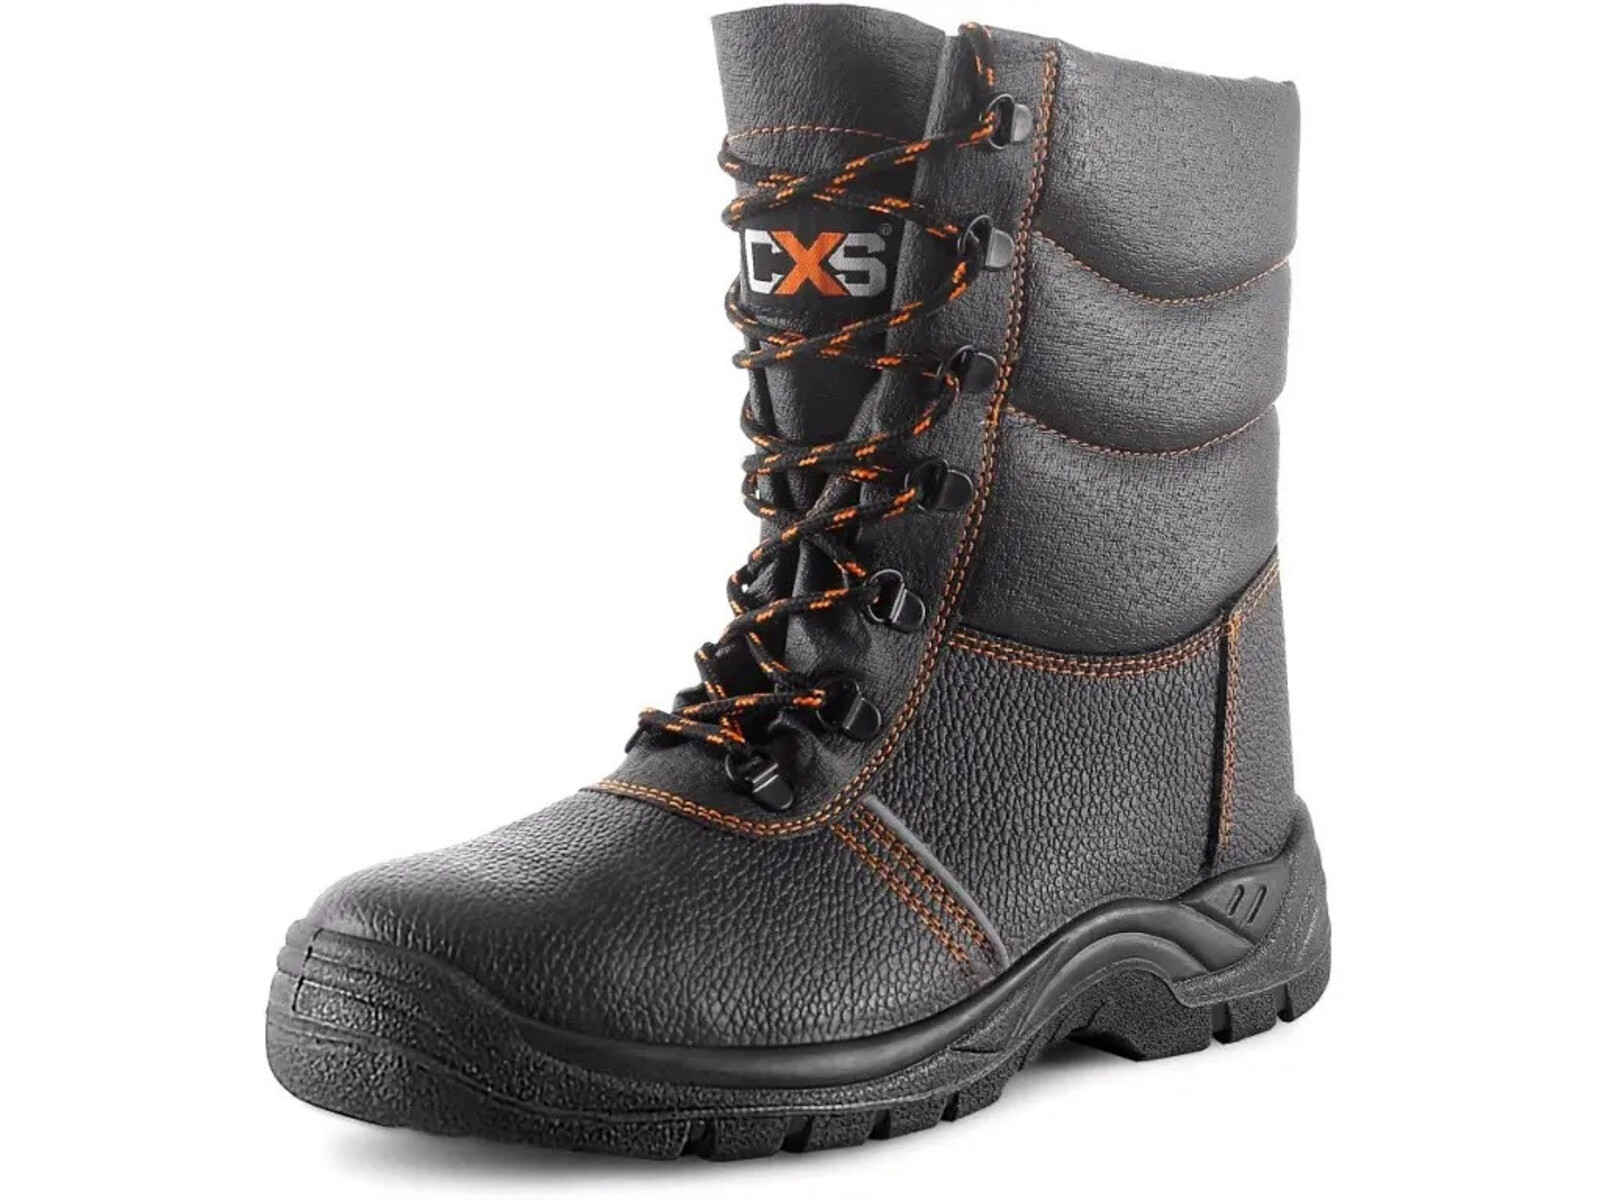 Zimná bezpečnostná poloholeňová obuv CXS Stone Topaz Winter S3 SRC - veľkosť: 43, farba: čierna/oranžová